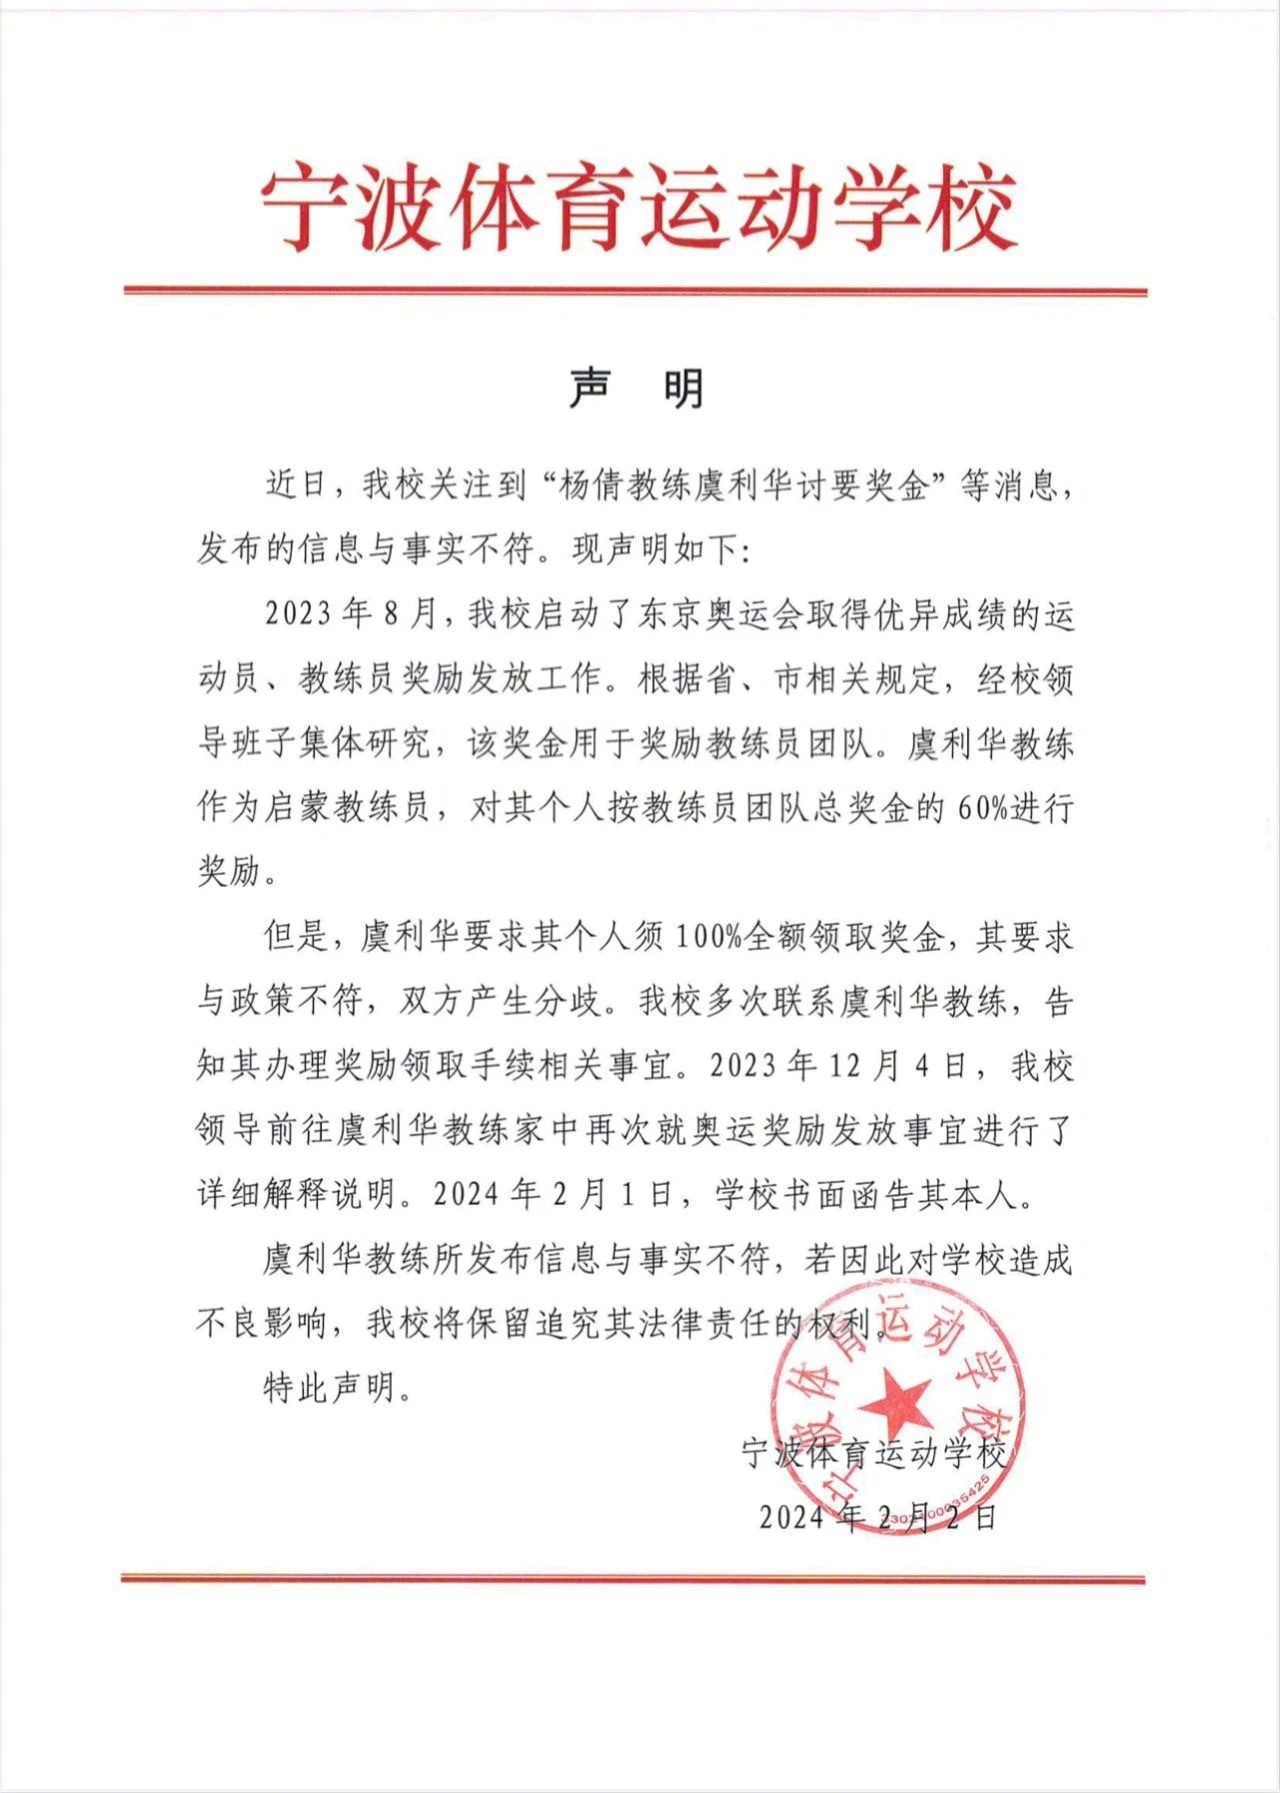 宁波体校回应杨倩教练讨薪与事实不符他要求领团队总奖金的100%